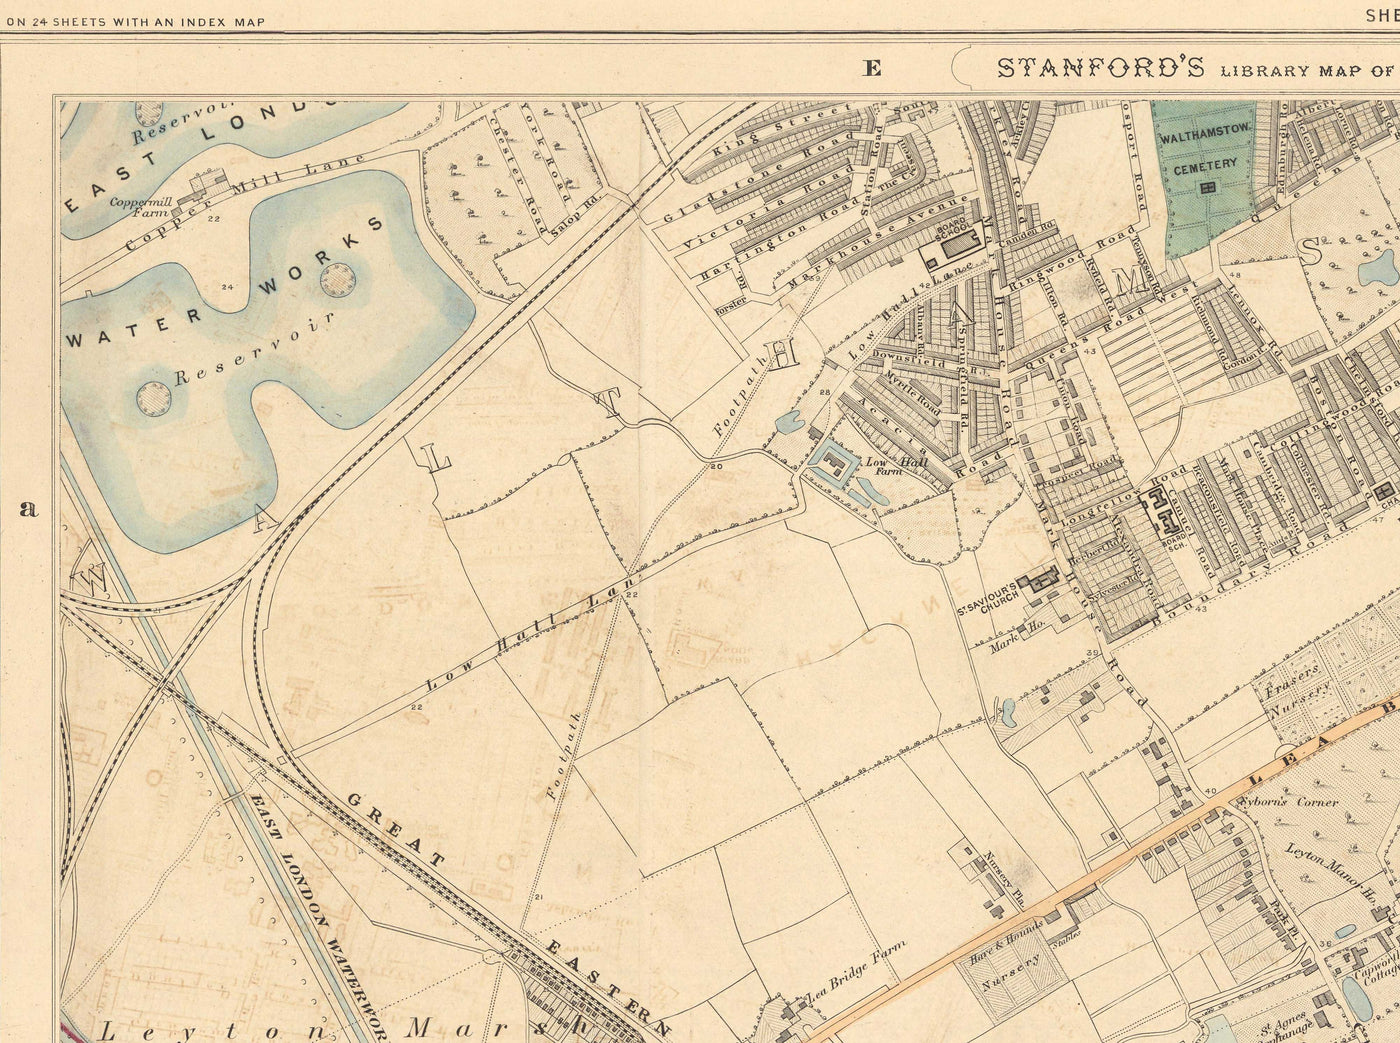 Old Colour Map of North East London, 1891 - Walthamstow, Leyton, Wanstead, Leytonstone, Lea - E5, E10, E11, E17